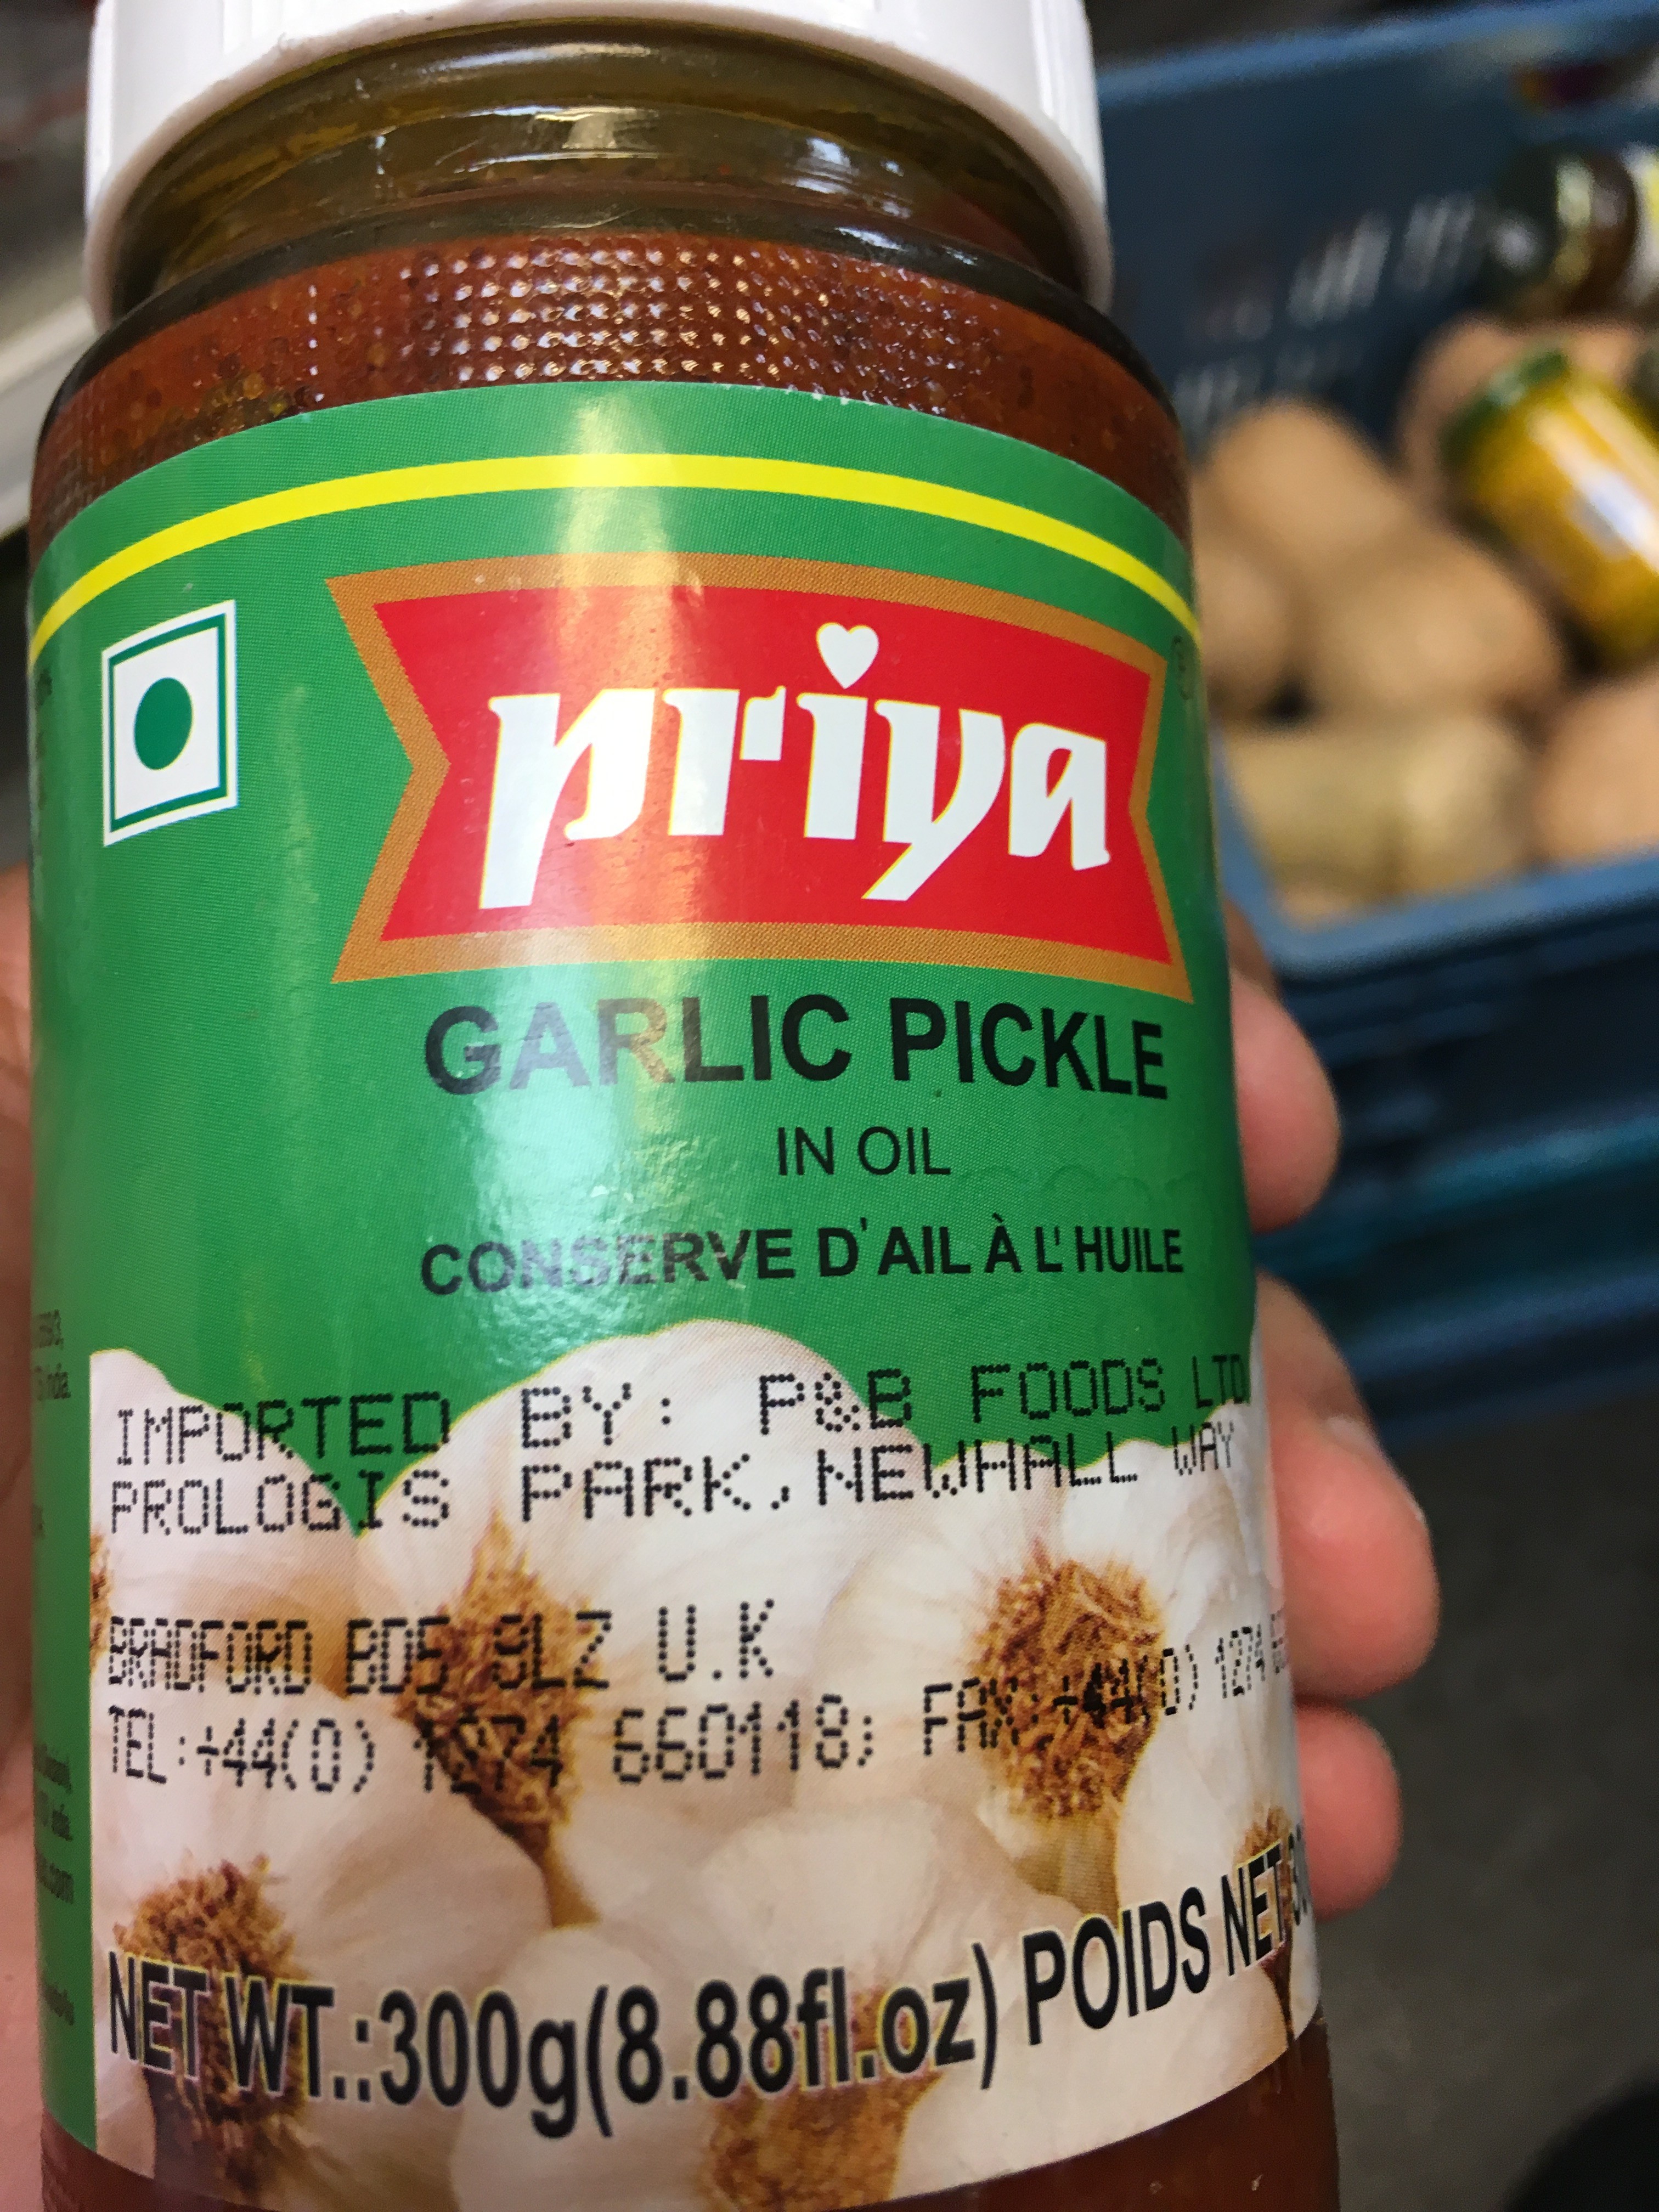 Priya garlic pickle in oil